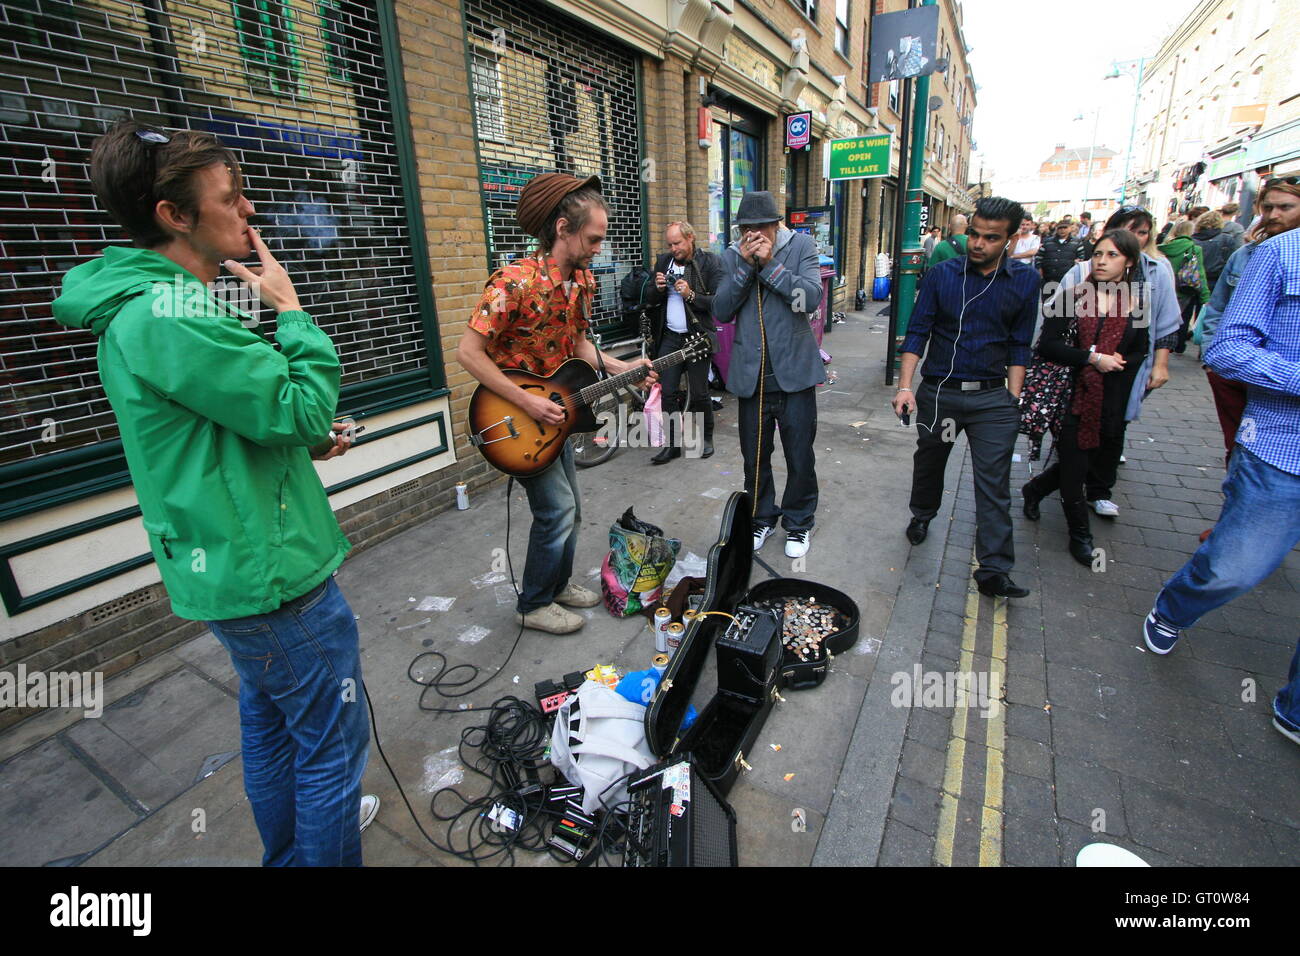 Les amuseurs publics jouant sur une rue, Brick Lane, Londres Banque D'Images